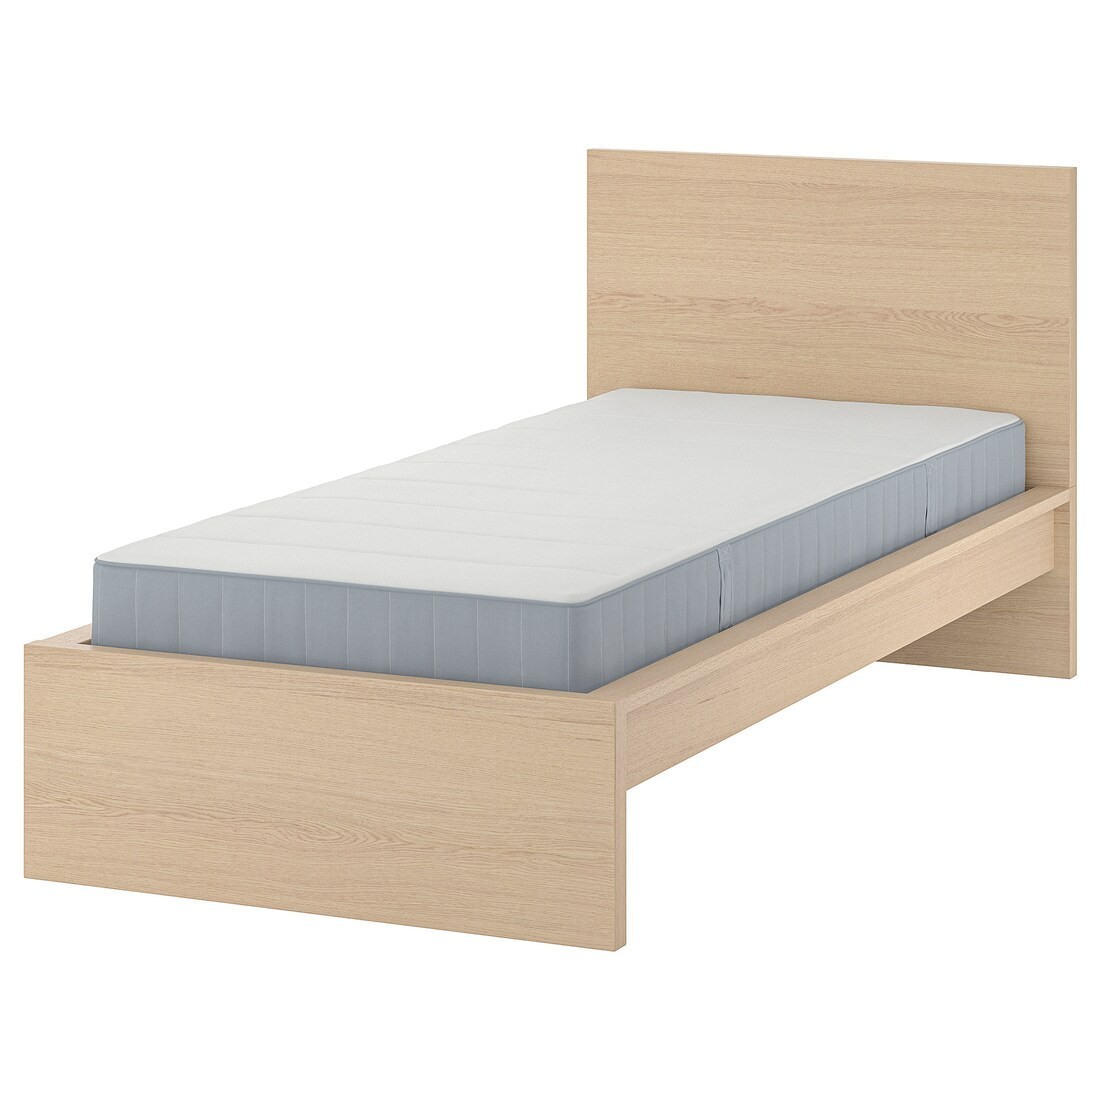 IKEA MALM Кровать с матрасом, 90x200 см 99544026 995.440.26